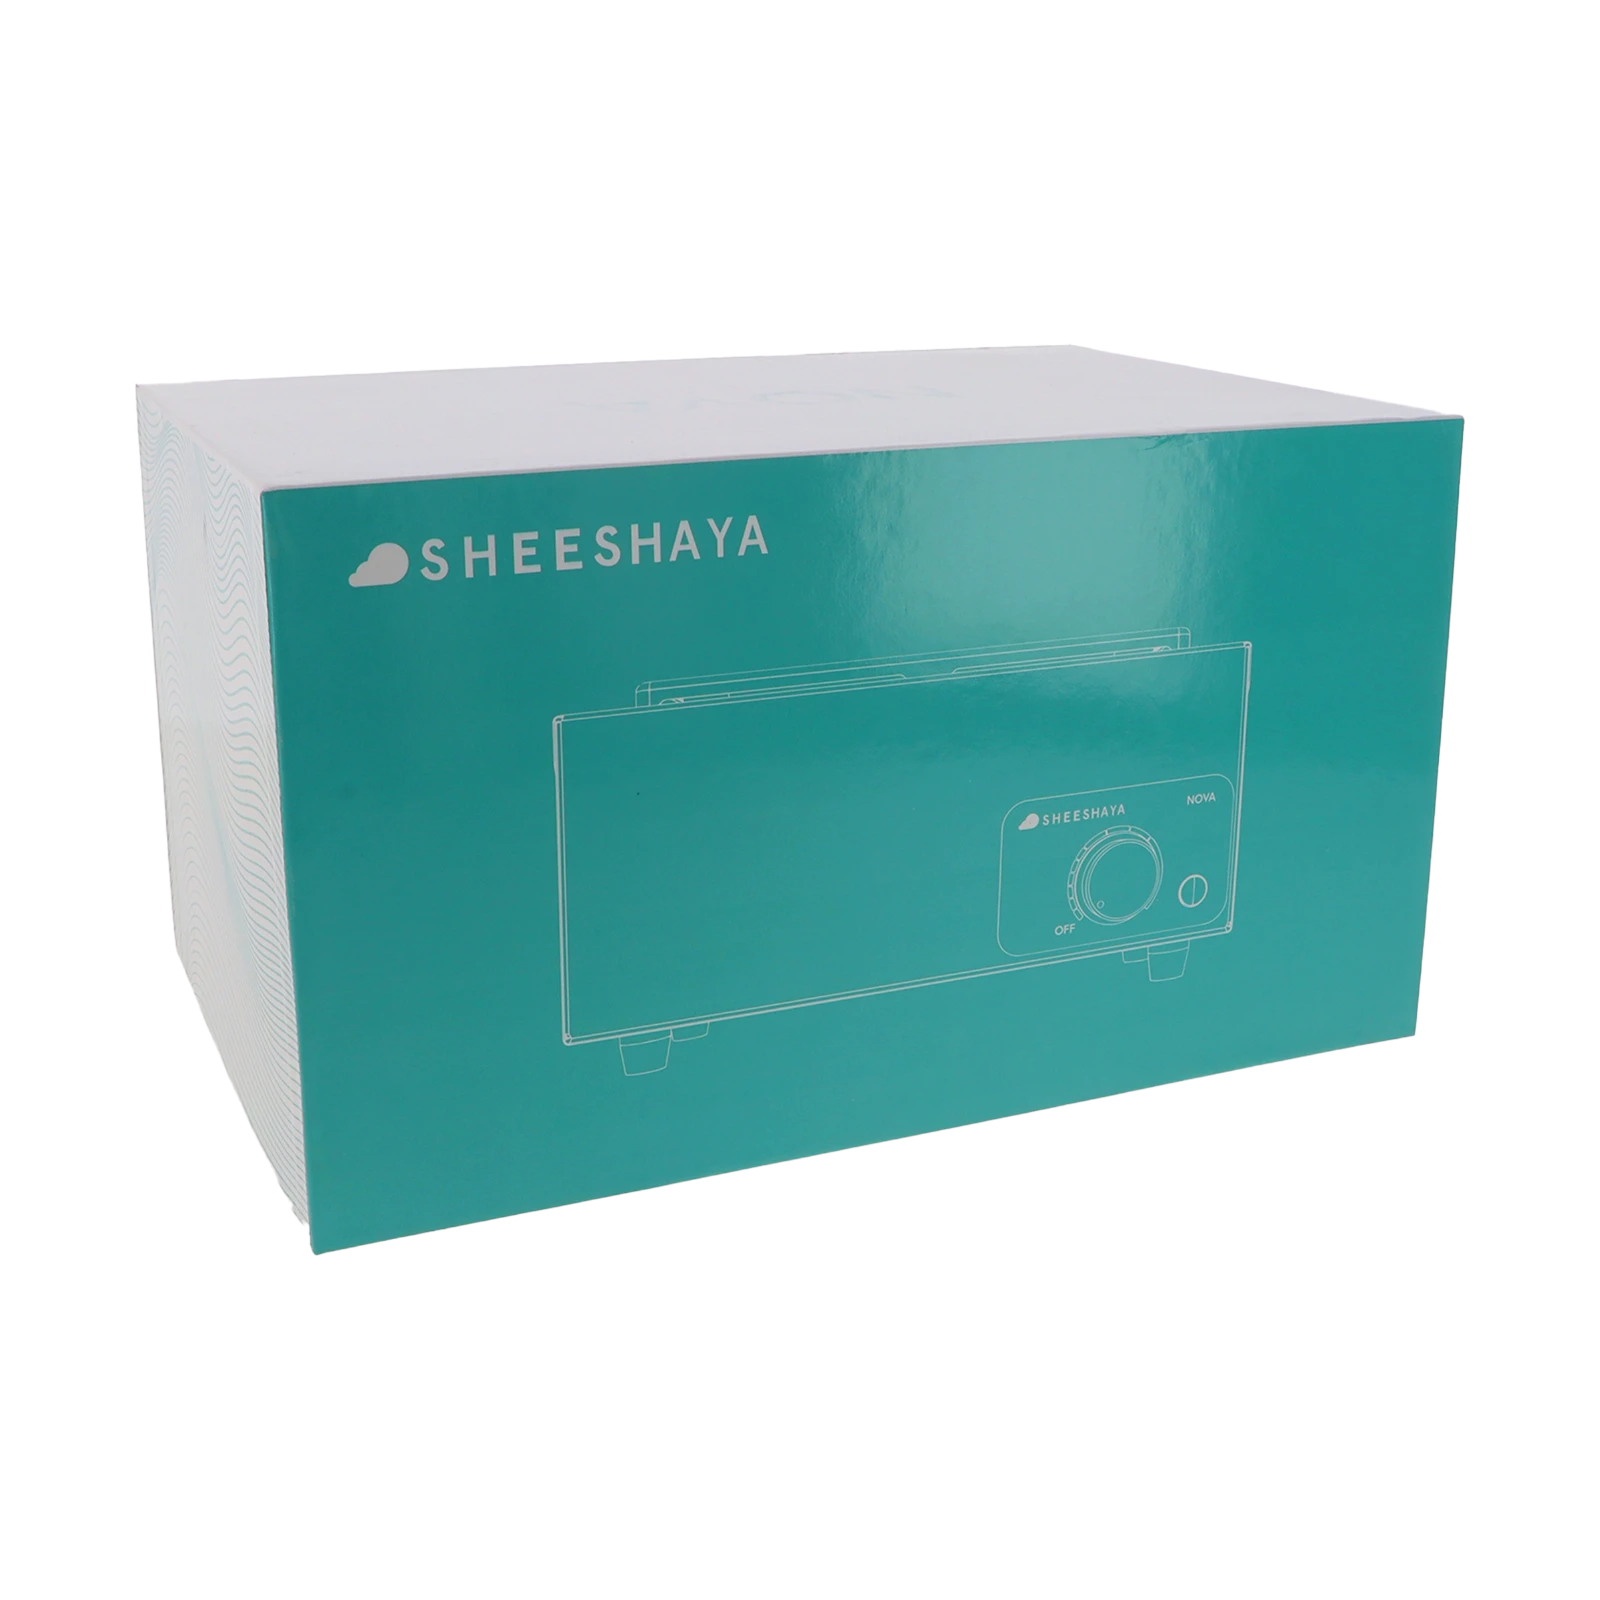 Sheeshaya - Nova - Kohleanzünder - 600 W